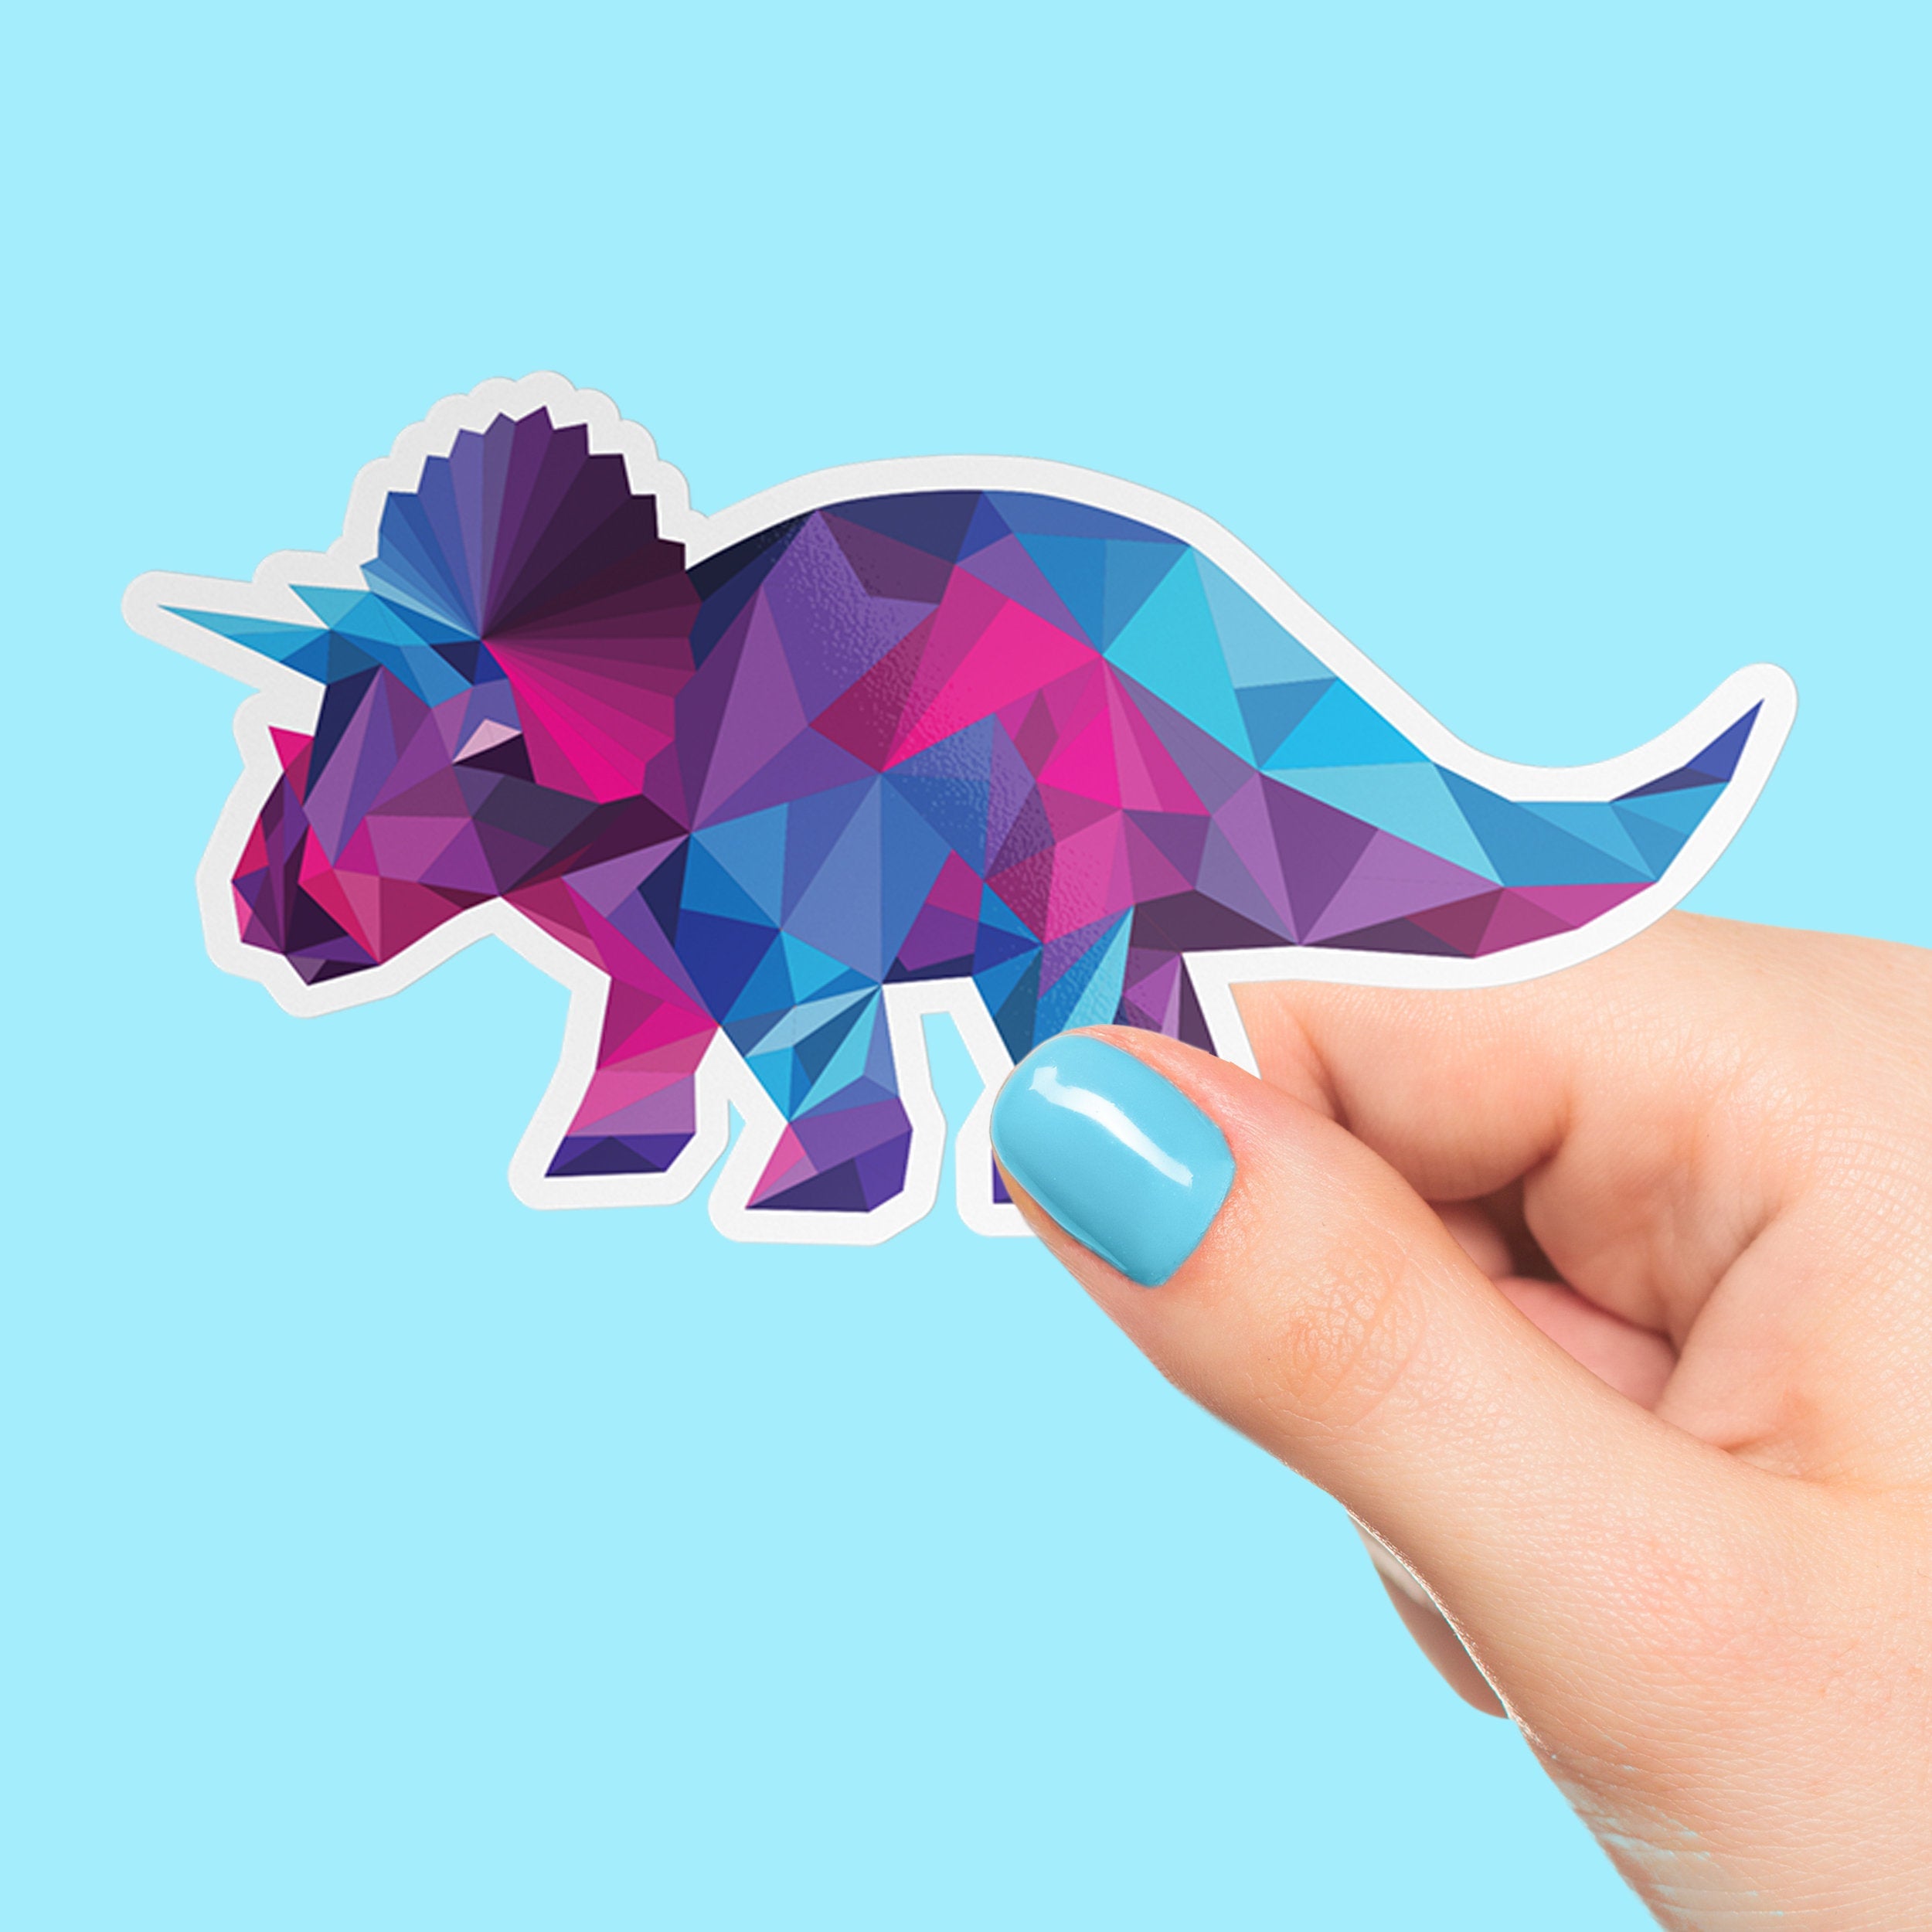 Dinosaur Triceratops Premium Vinyl Sticker, Water Bottle Sticker, Dinosaur Party Favors,  Laptop Decal